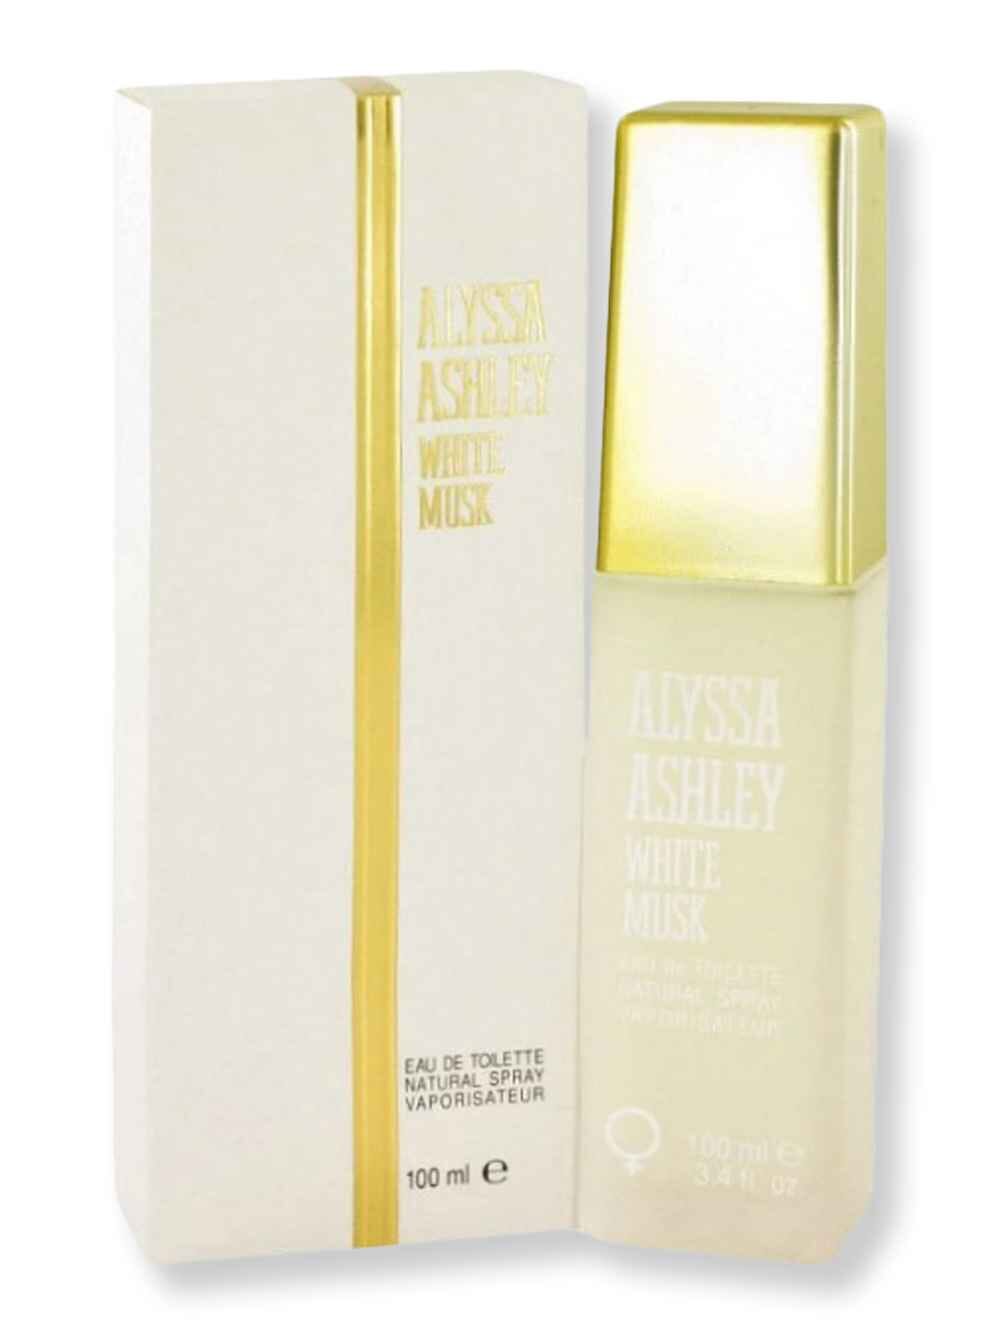 Alyssa Ashley Alyssa Ashley White Musk EDT Spray 3.4 oz100 ml Perfume 